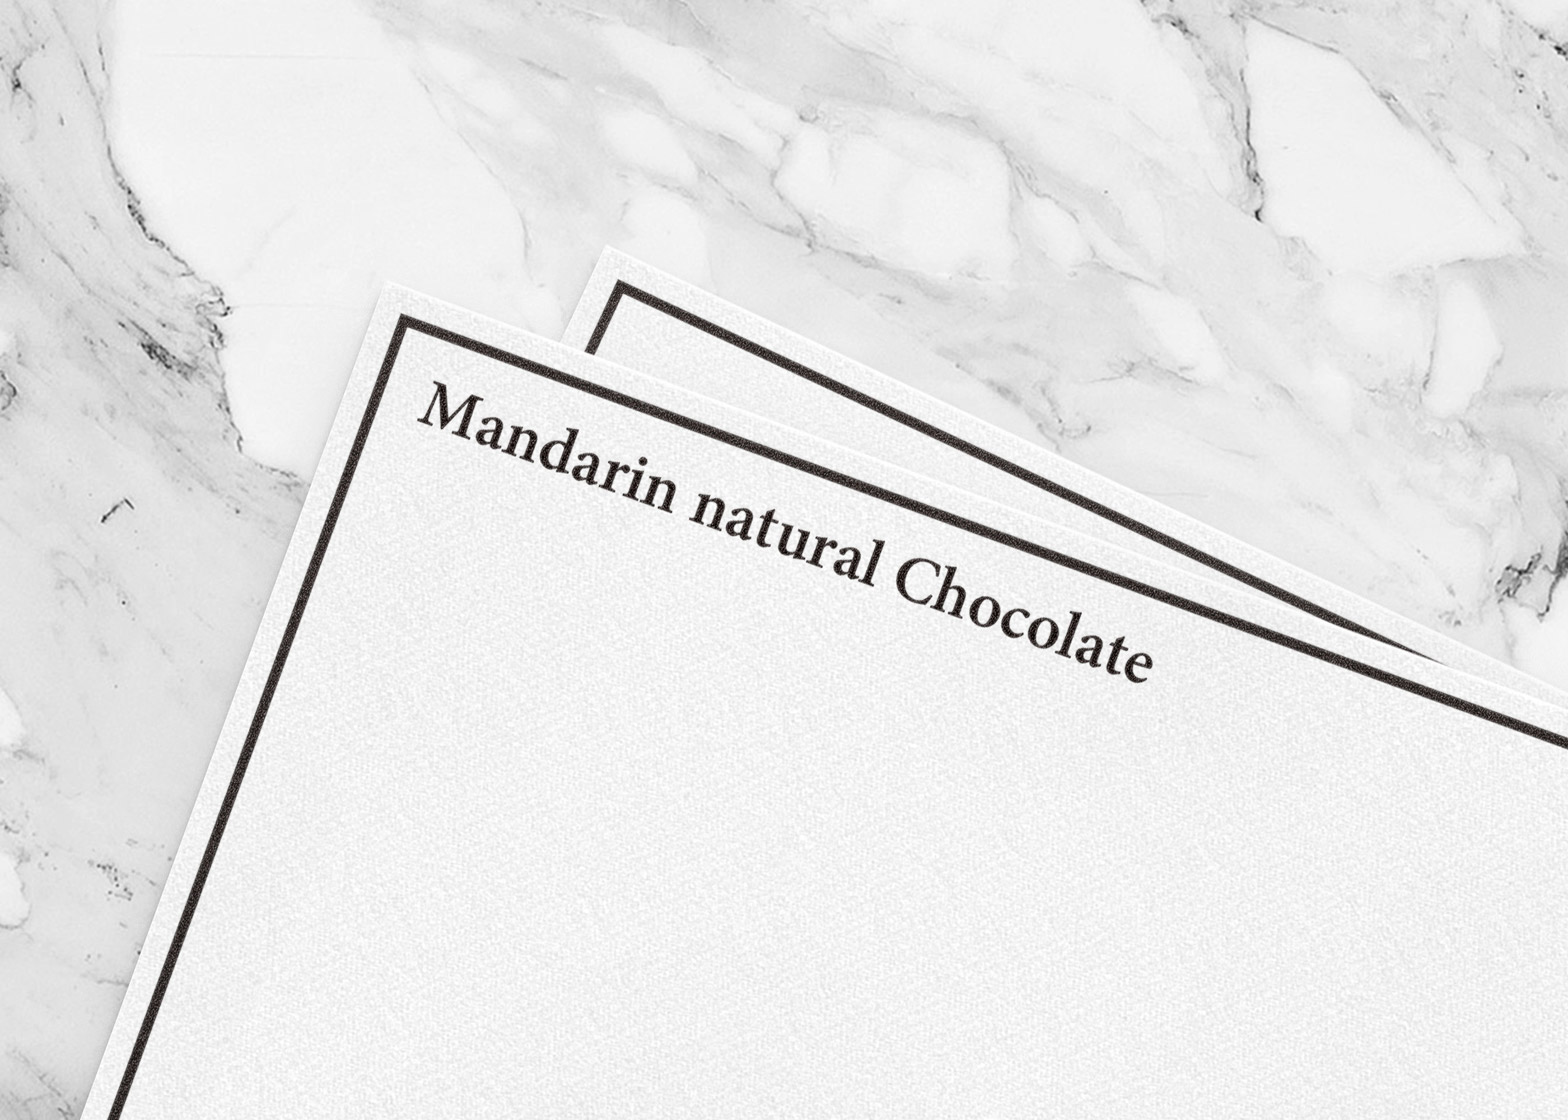 mandarin-natural-chocolate-yuta-takahashi-branding-packaging-design_dezeen_1568_16